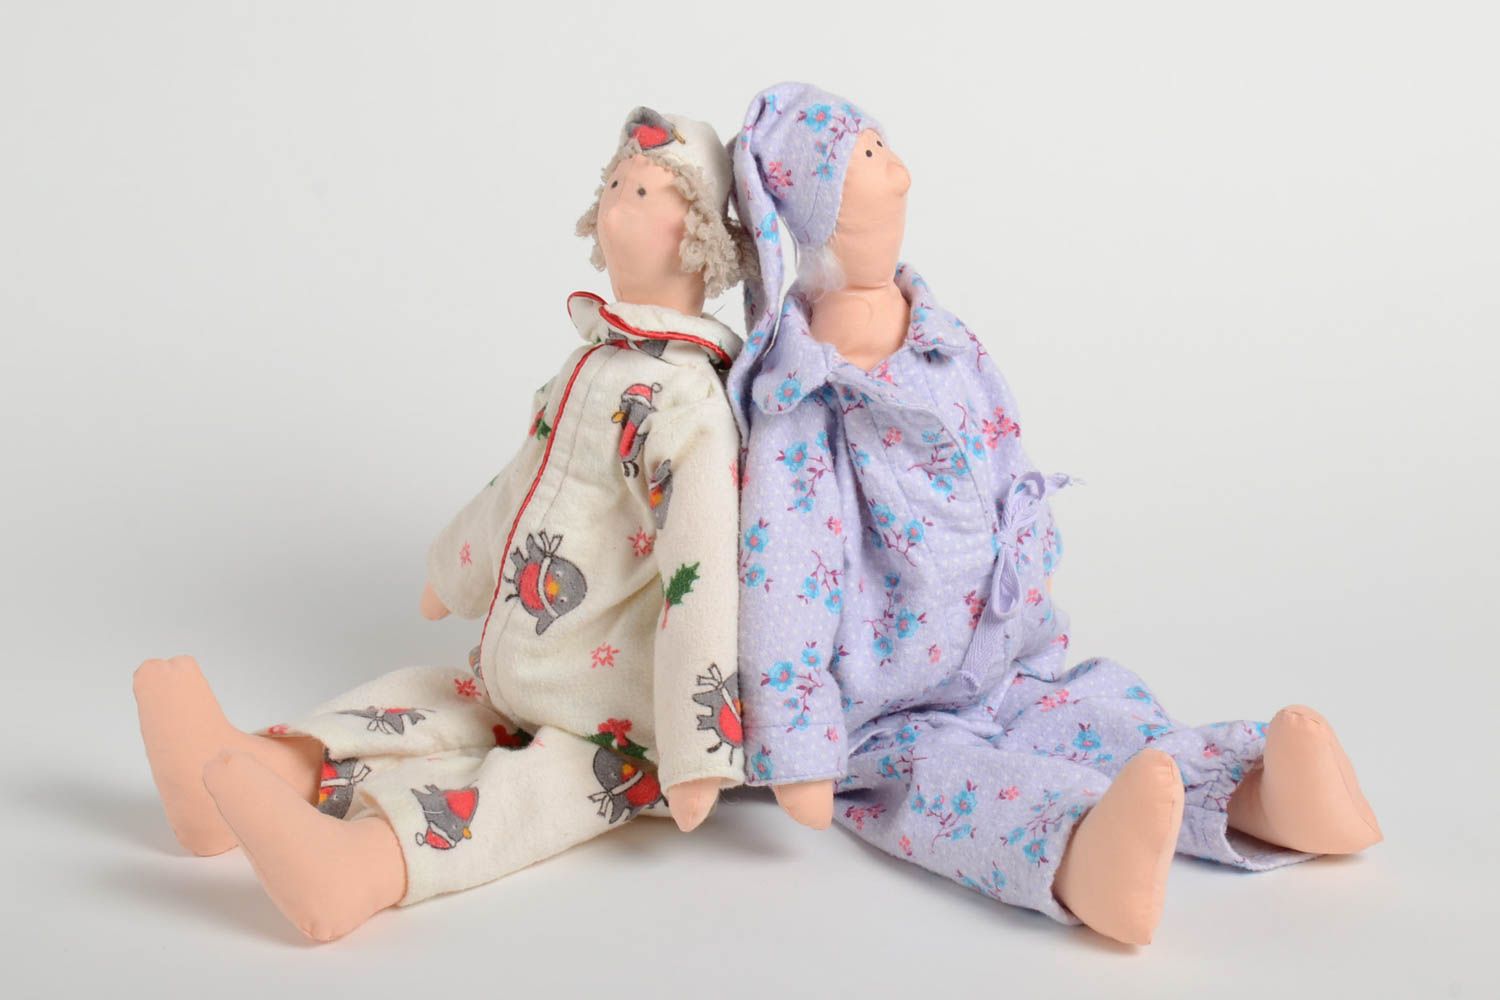 Игрушки куклы из ткани набор из 2 изделий светлые небольшие для детей хэнд мейд фото 2